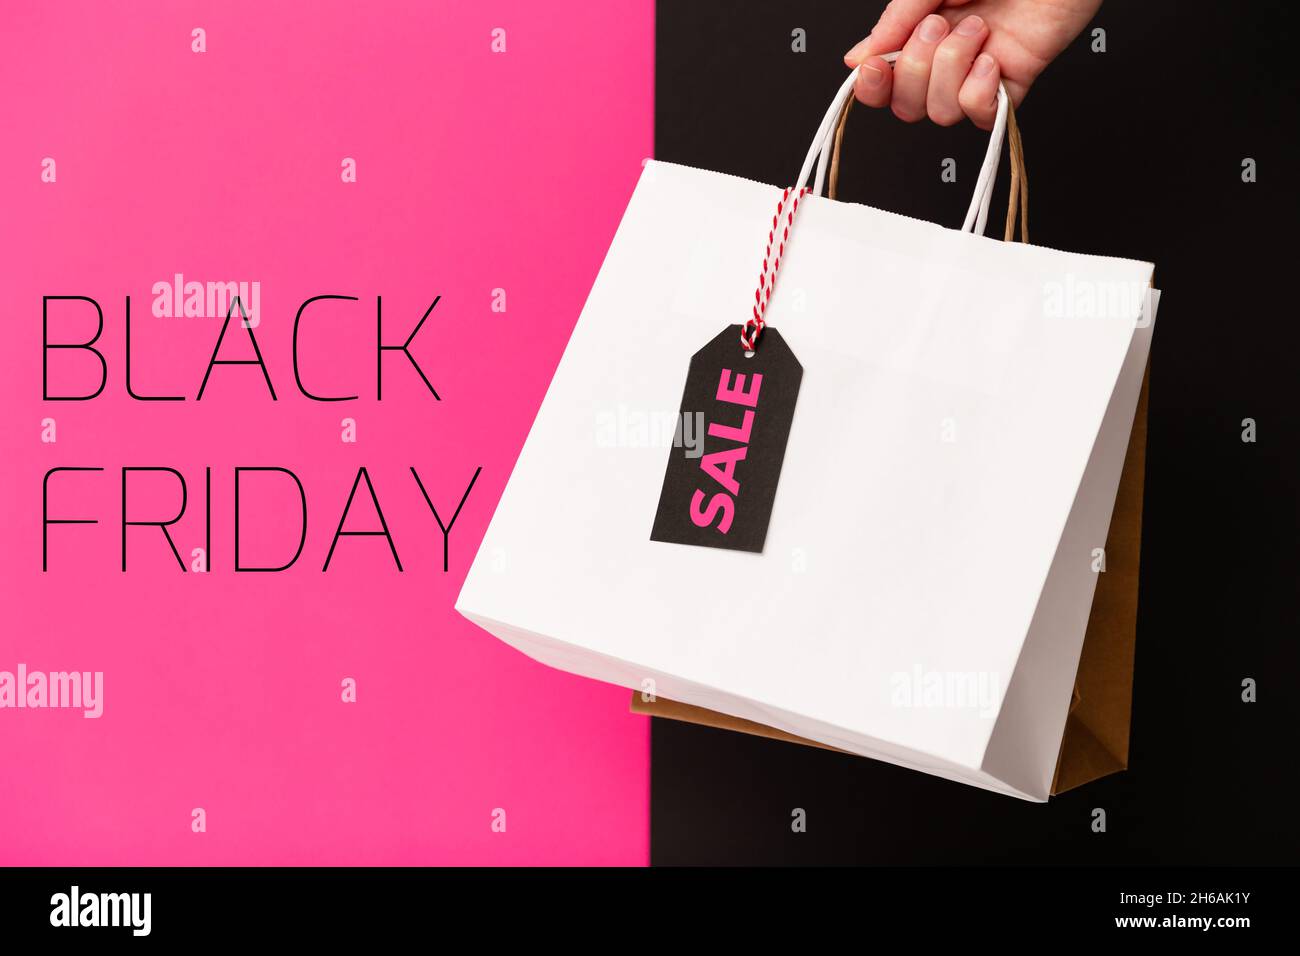 Black Friday, mano femminile che tiene due borse shopping con vendita tag prezzo isolato su sfondo rosa e nero. Offerta black friday, sconto, shopping c Foto Stock